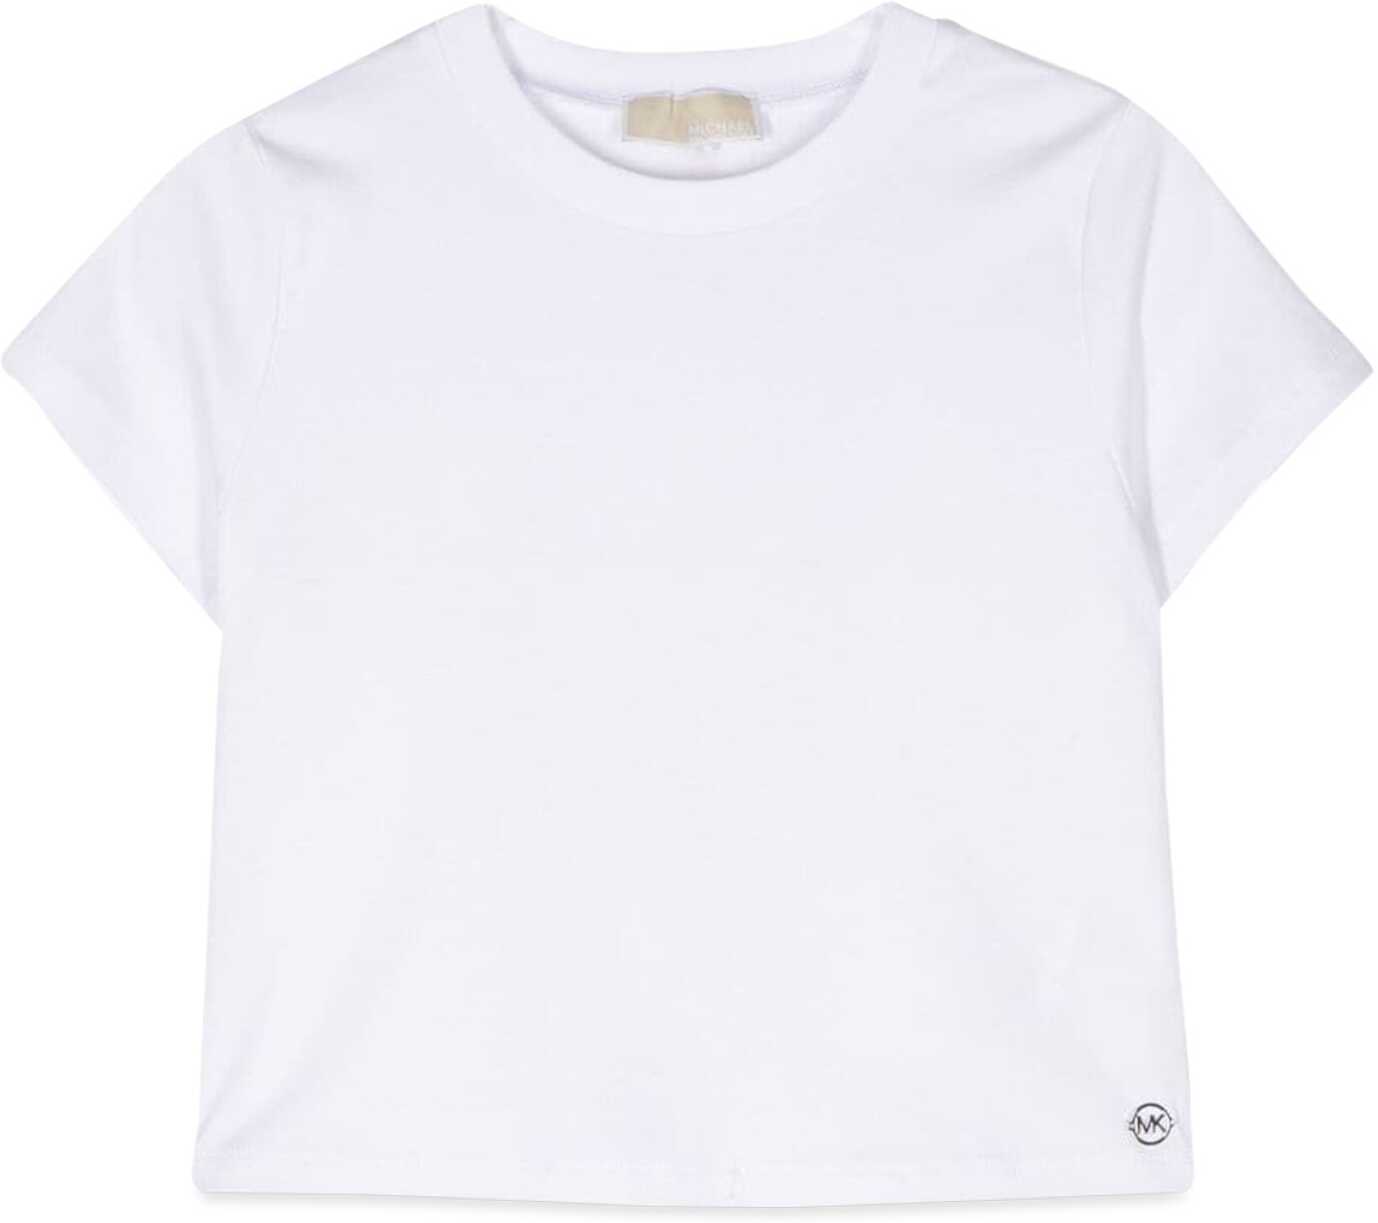 Poze Michael Kors T-Shirt WHITE